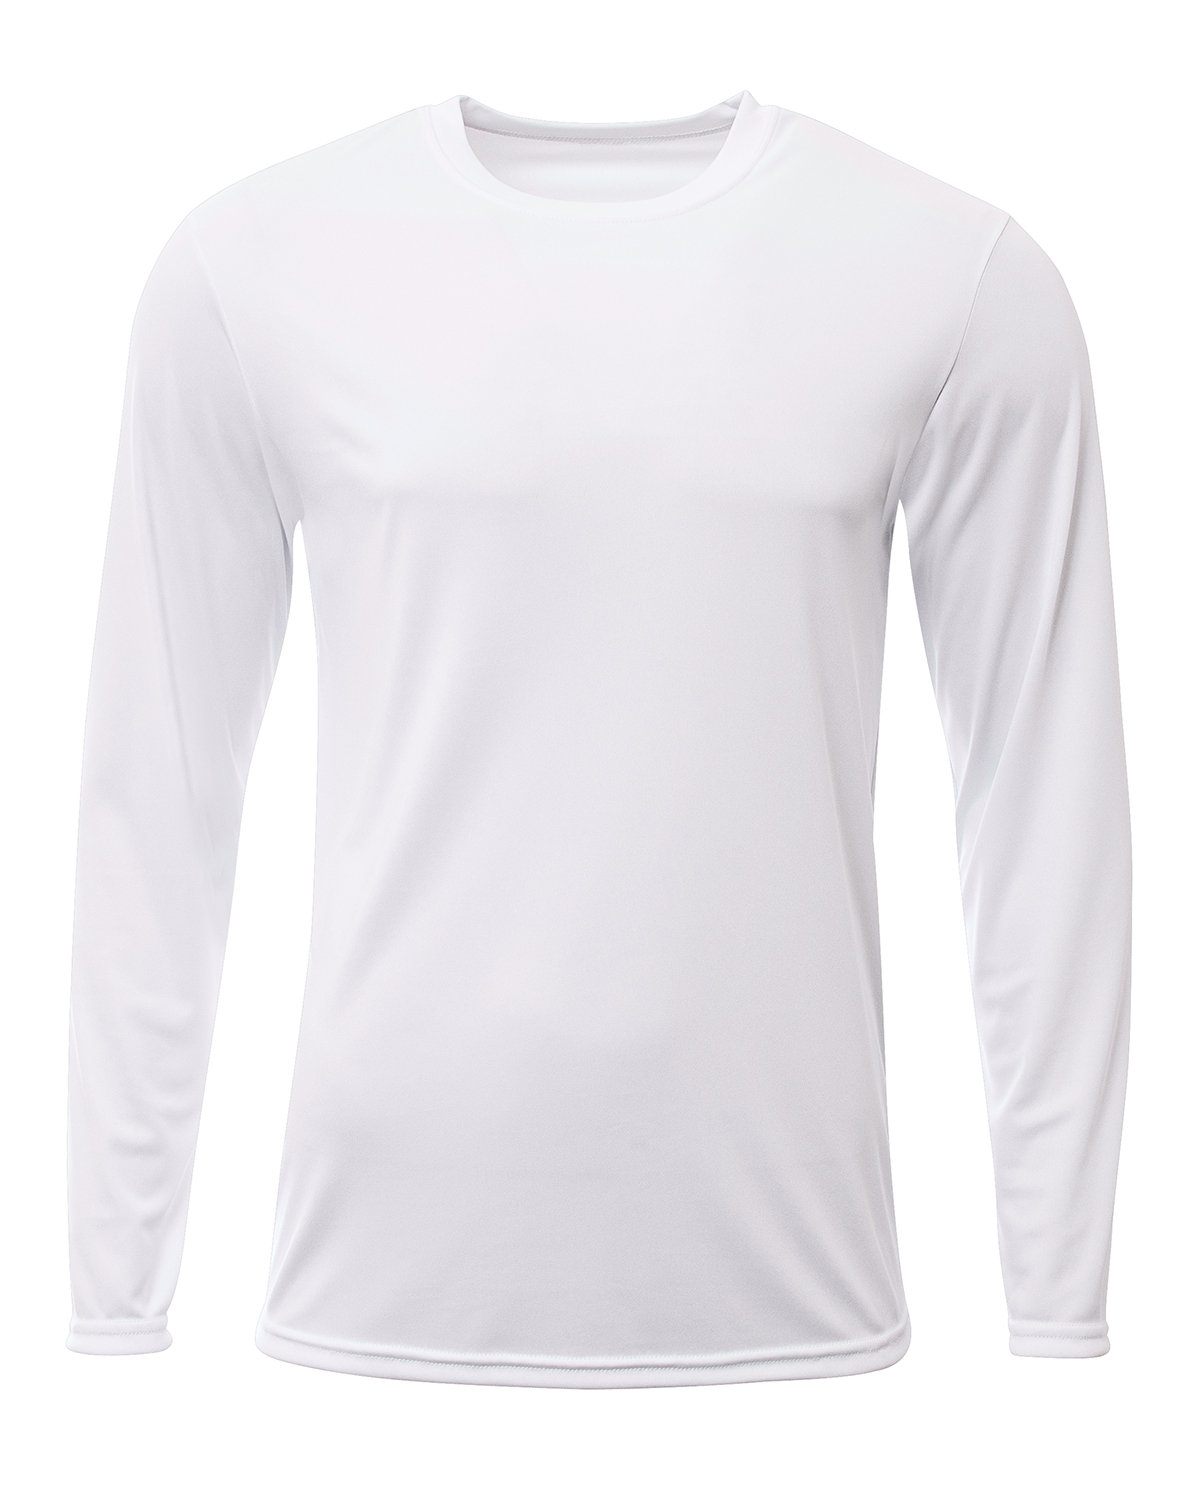 A4 Men's Sprint Long Sleeve T-Shirt WHITE 